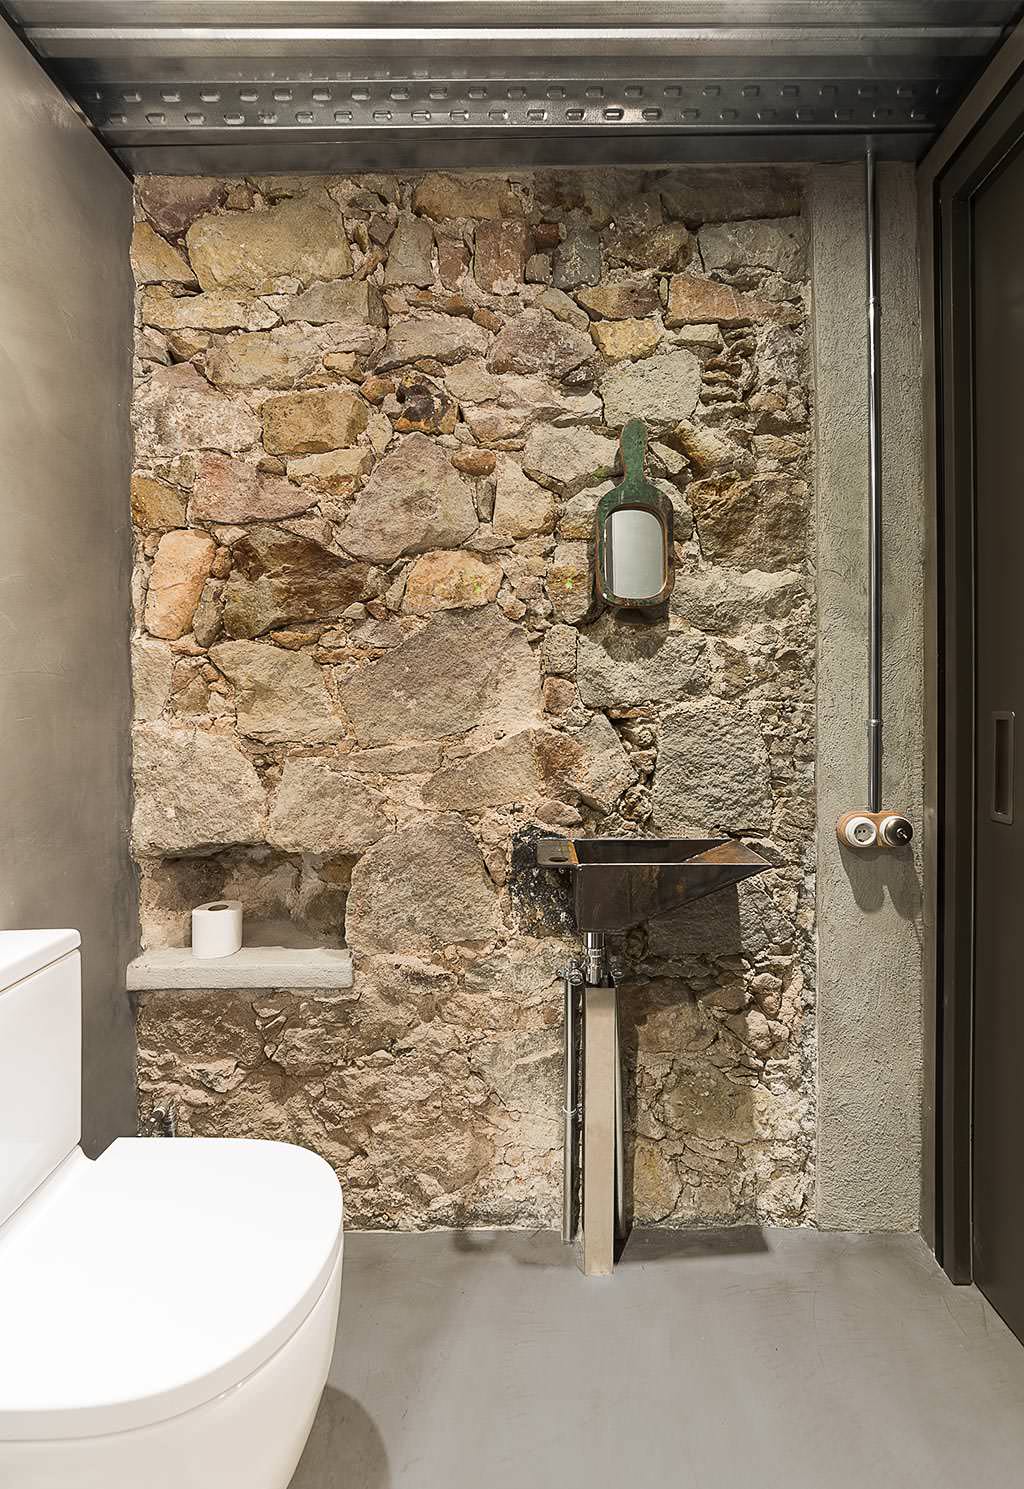 51 Industrial Style Bathrooms Plus, Industrial Floating Shelves Bathroom Designs 2018